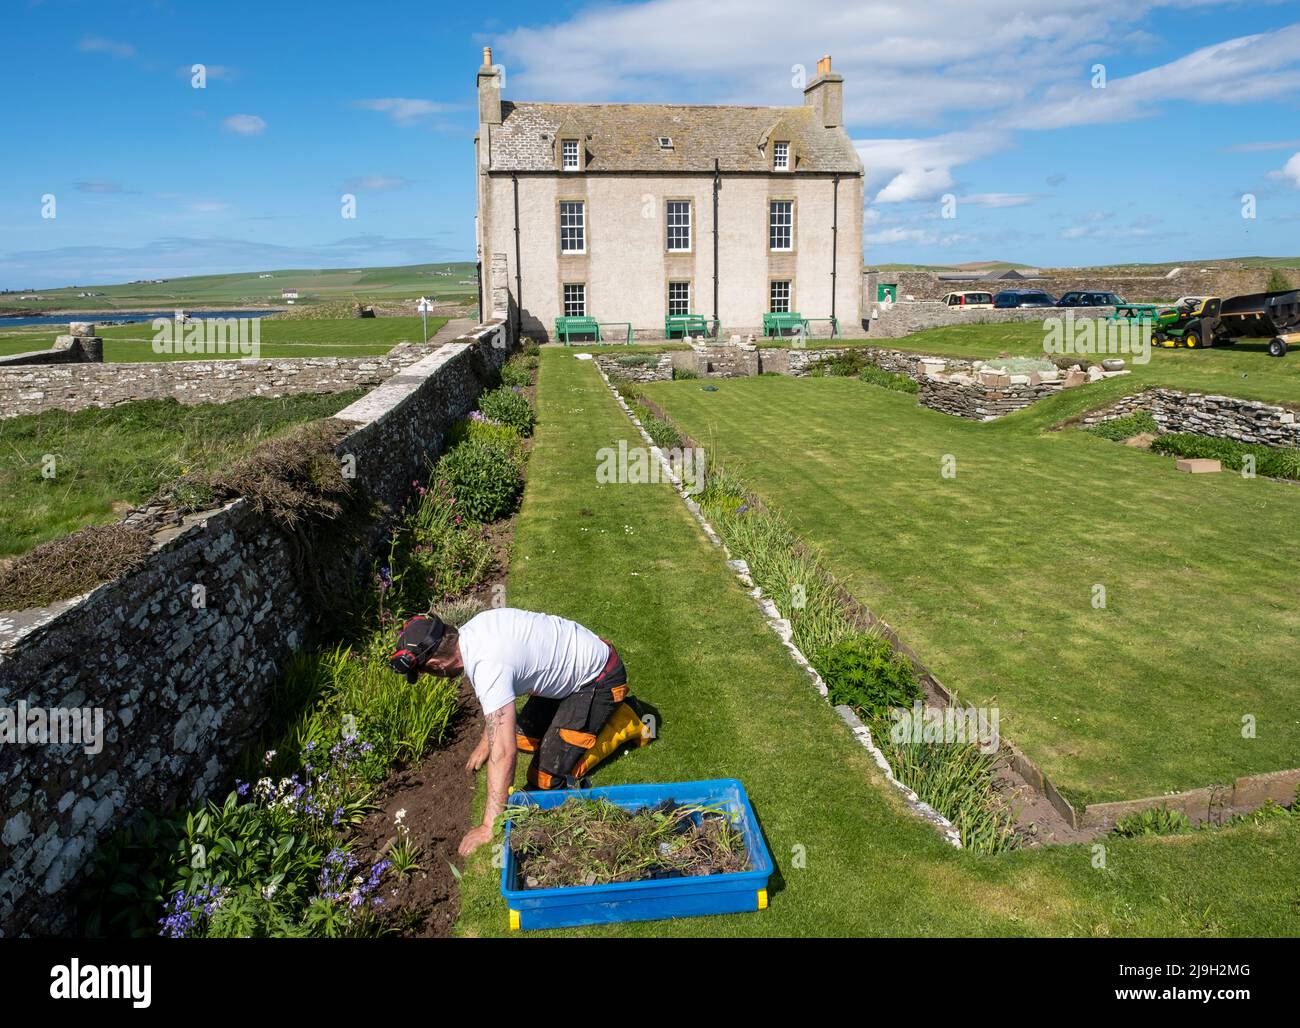 Skail la casa e il giardino nei pressi del villaggio di Skail e Skara Brae sulla terraferma di Orkney in Scozia Foto Stock